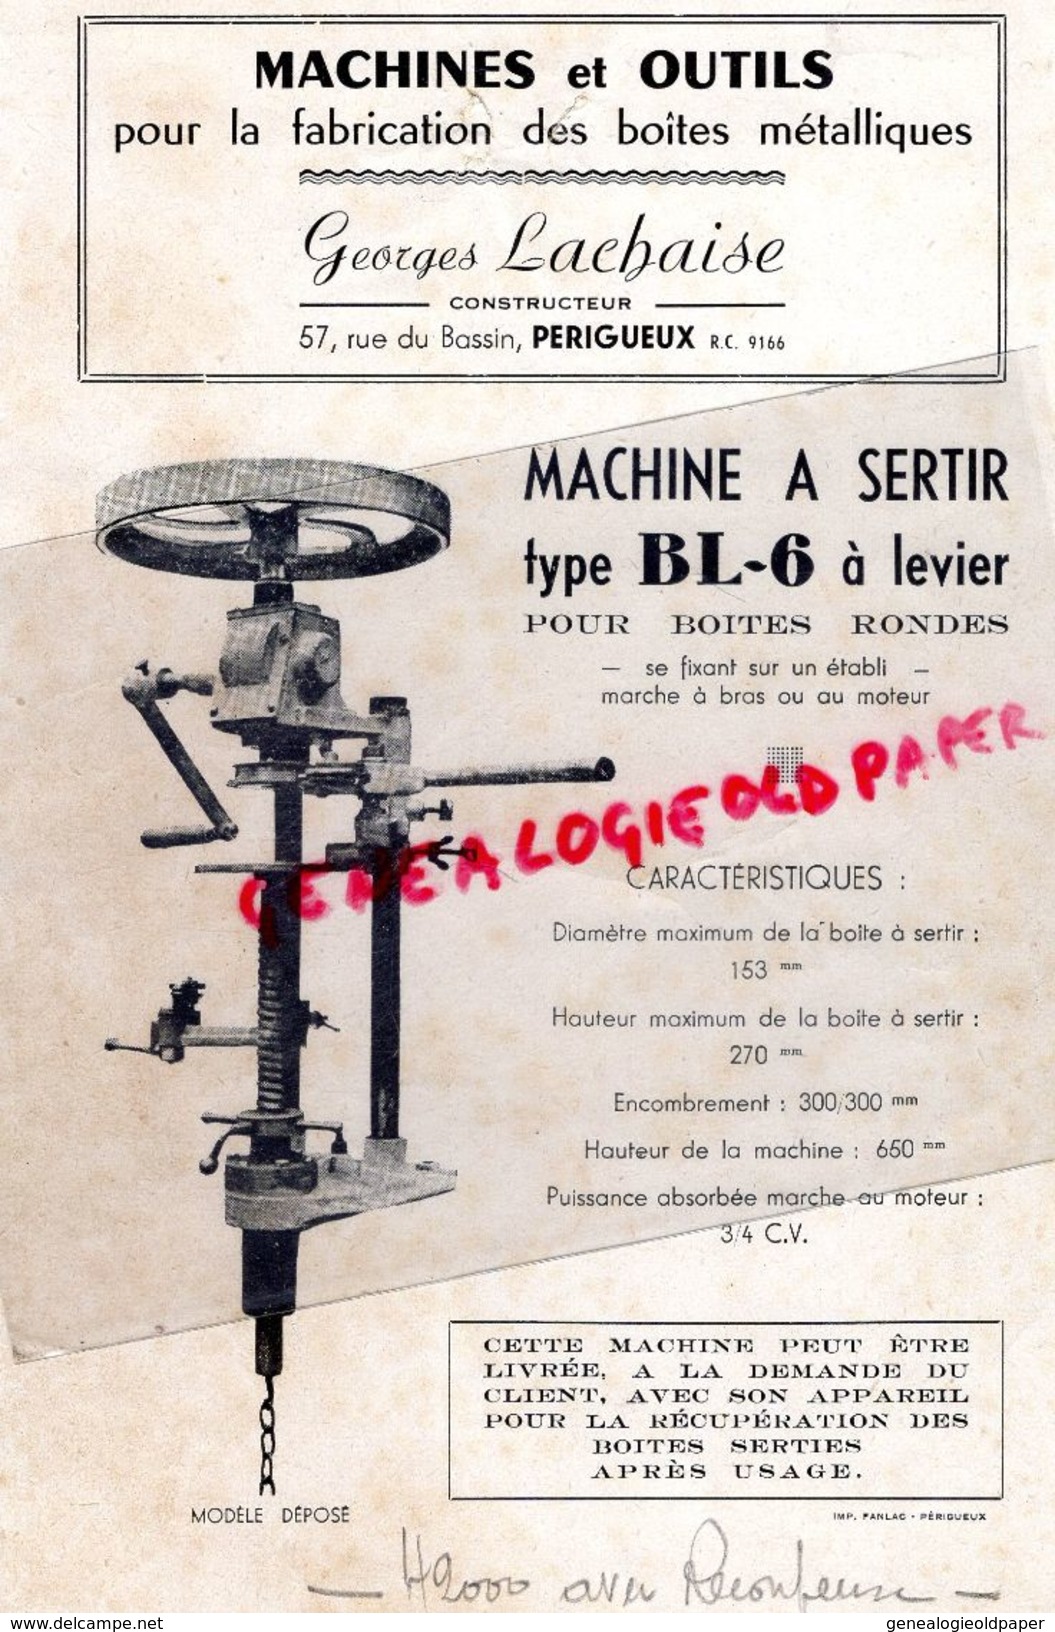 24 -PERIGUEUX- RARE PUBLICITE GEORGES LACHAISE-CONSTRUCTEUR MACHINES ET OUTILS FABRICATION BOITES METALLIQUES-RUE BASSIN - Reclame